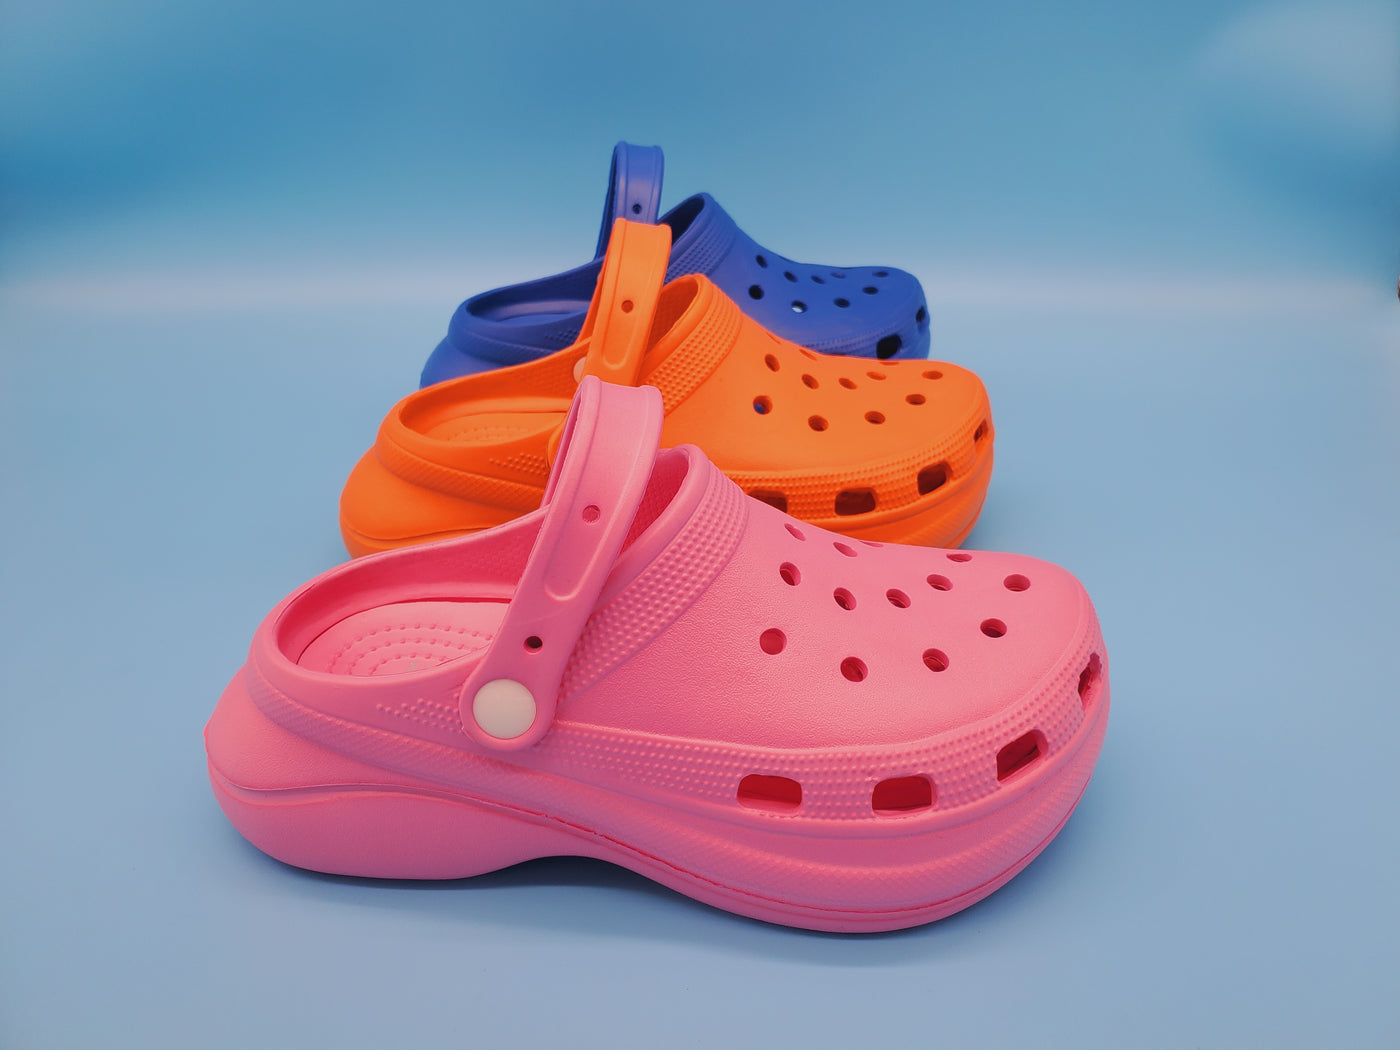 Crocs Clogs Like Sandals